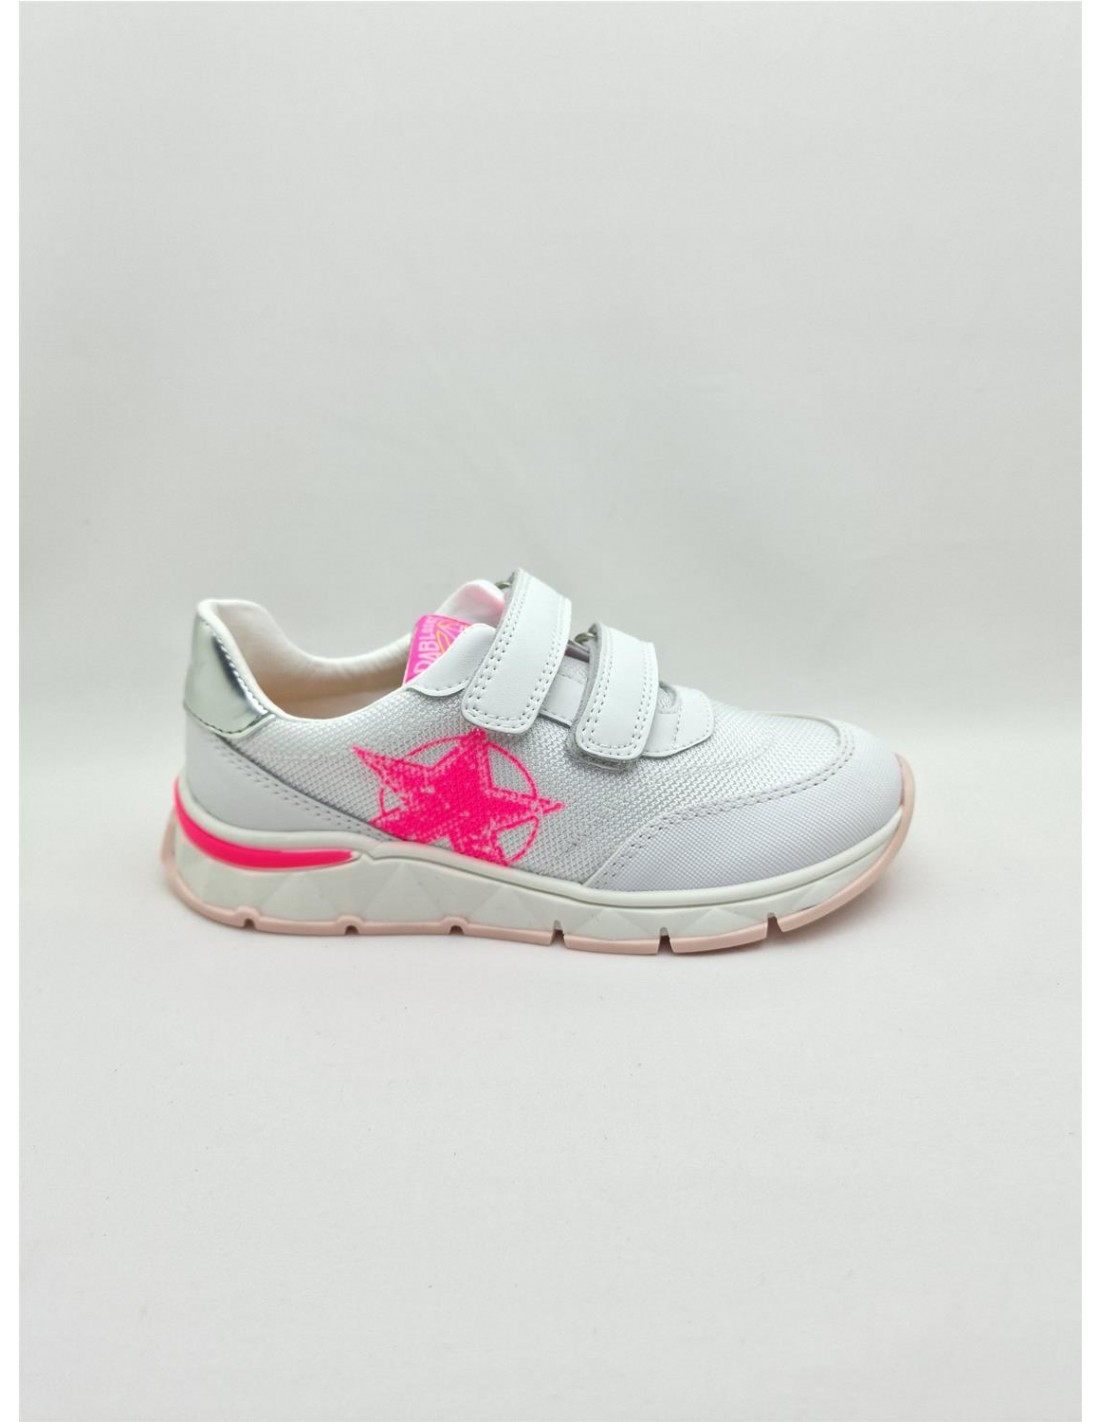 Кроссовки Pablosky для девочек, размер 29, белые с розовым принтом, 298707 белые кроссовки geox для девочки 33